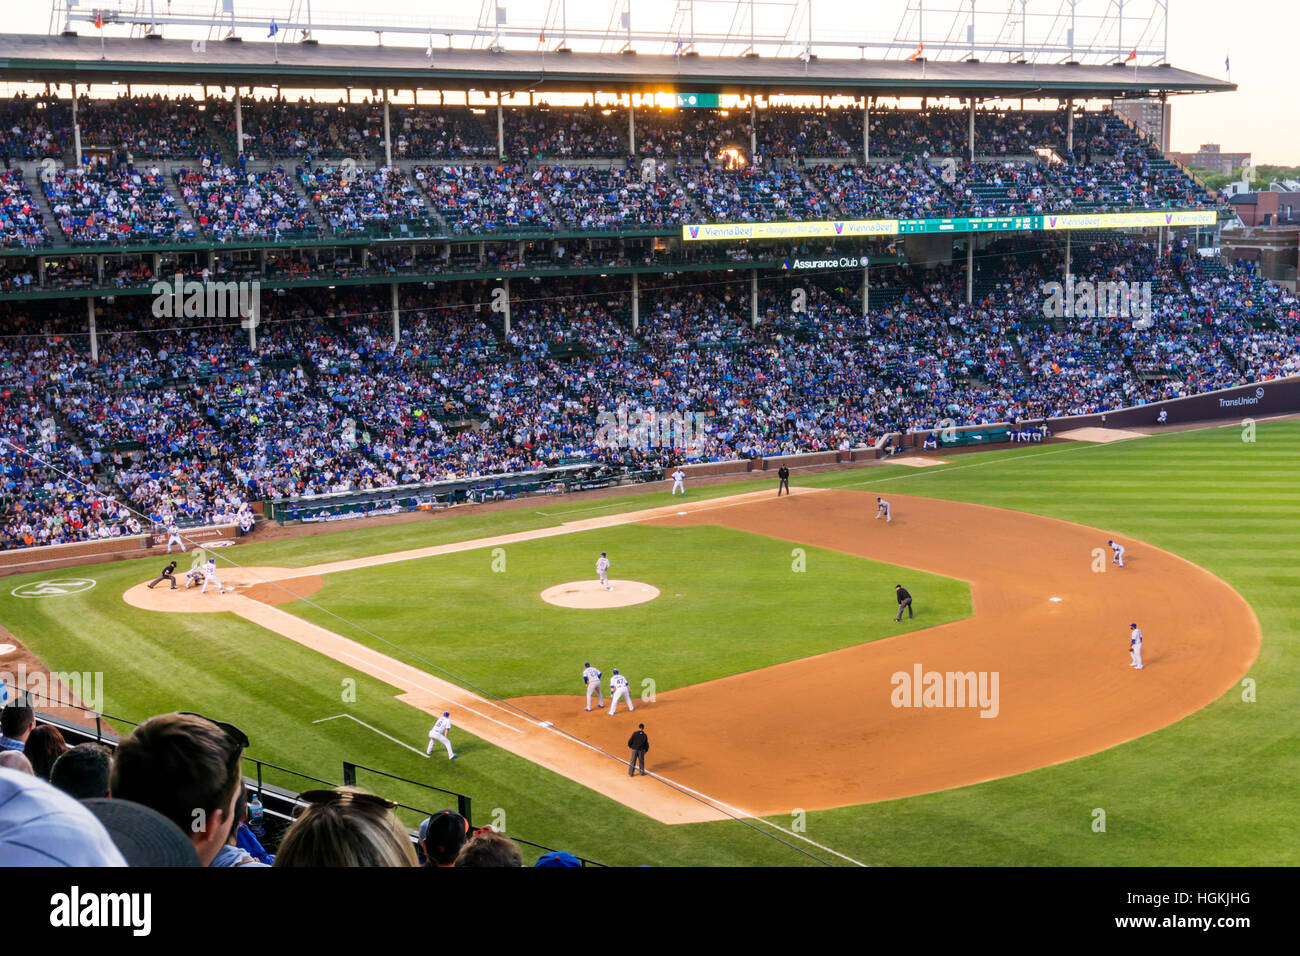 La foule à un match de baseball au Wrigley Field, Chicago, le stade des Chicago Cubs. Oursons jouant LA Dodgers. Banque D'Images